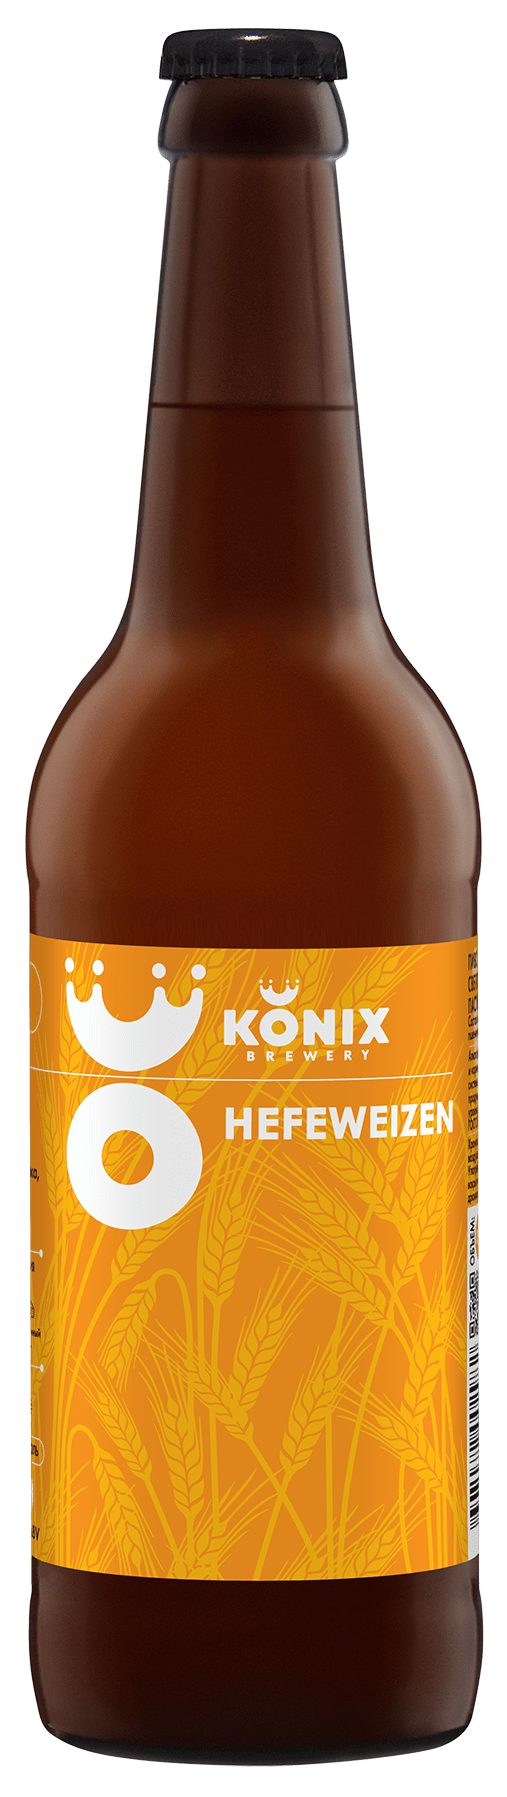 Konix Hefeweizen 